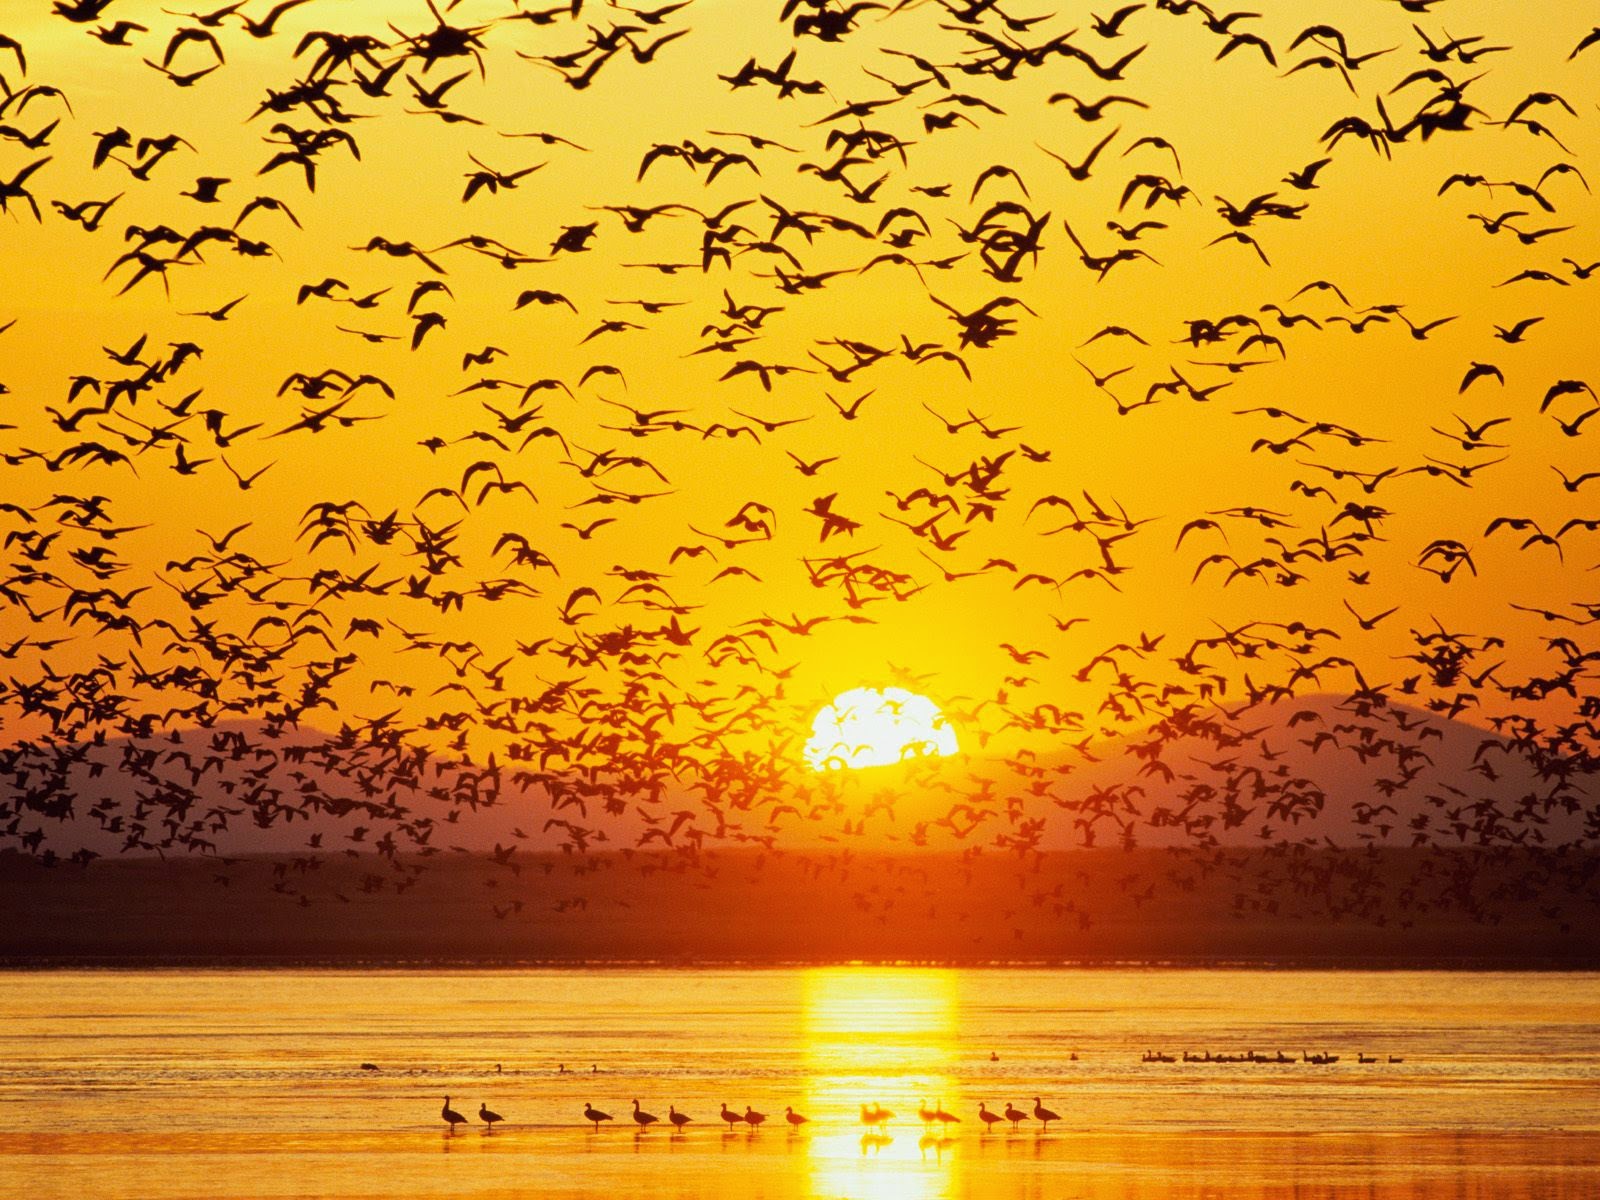 Kuşlar hep güneşe doğru uçar.